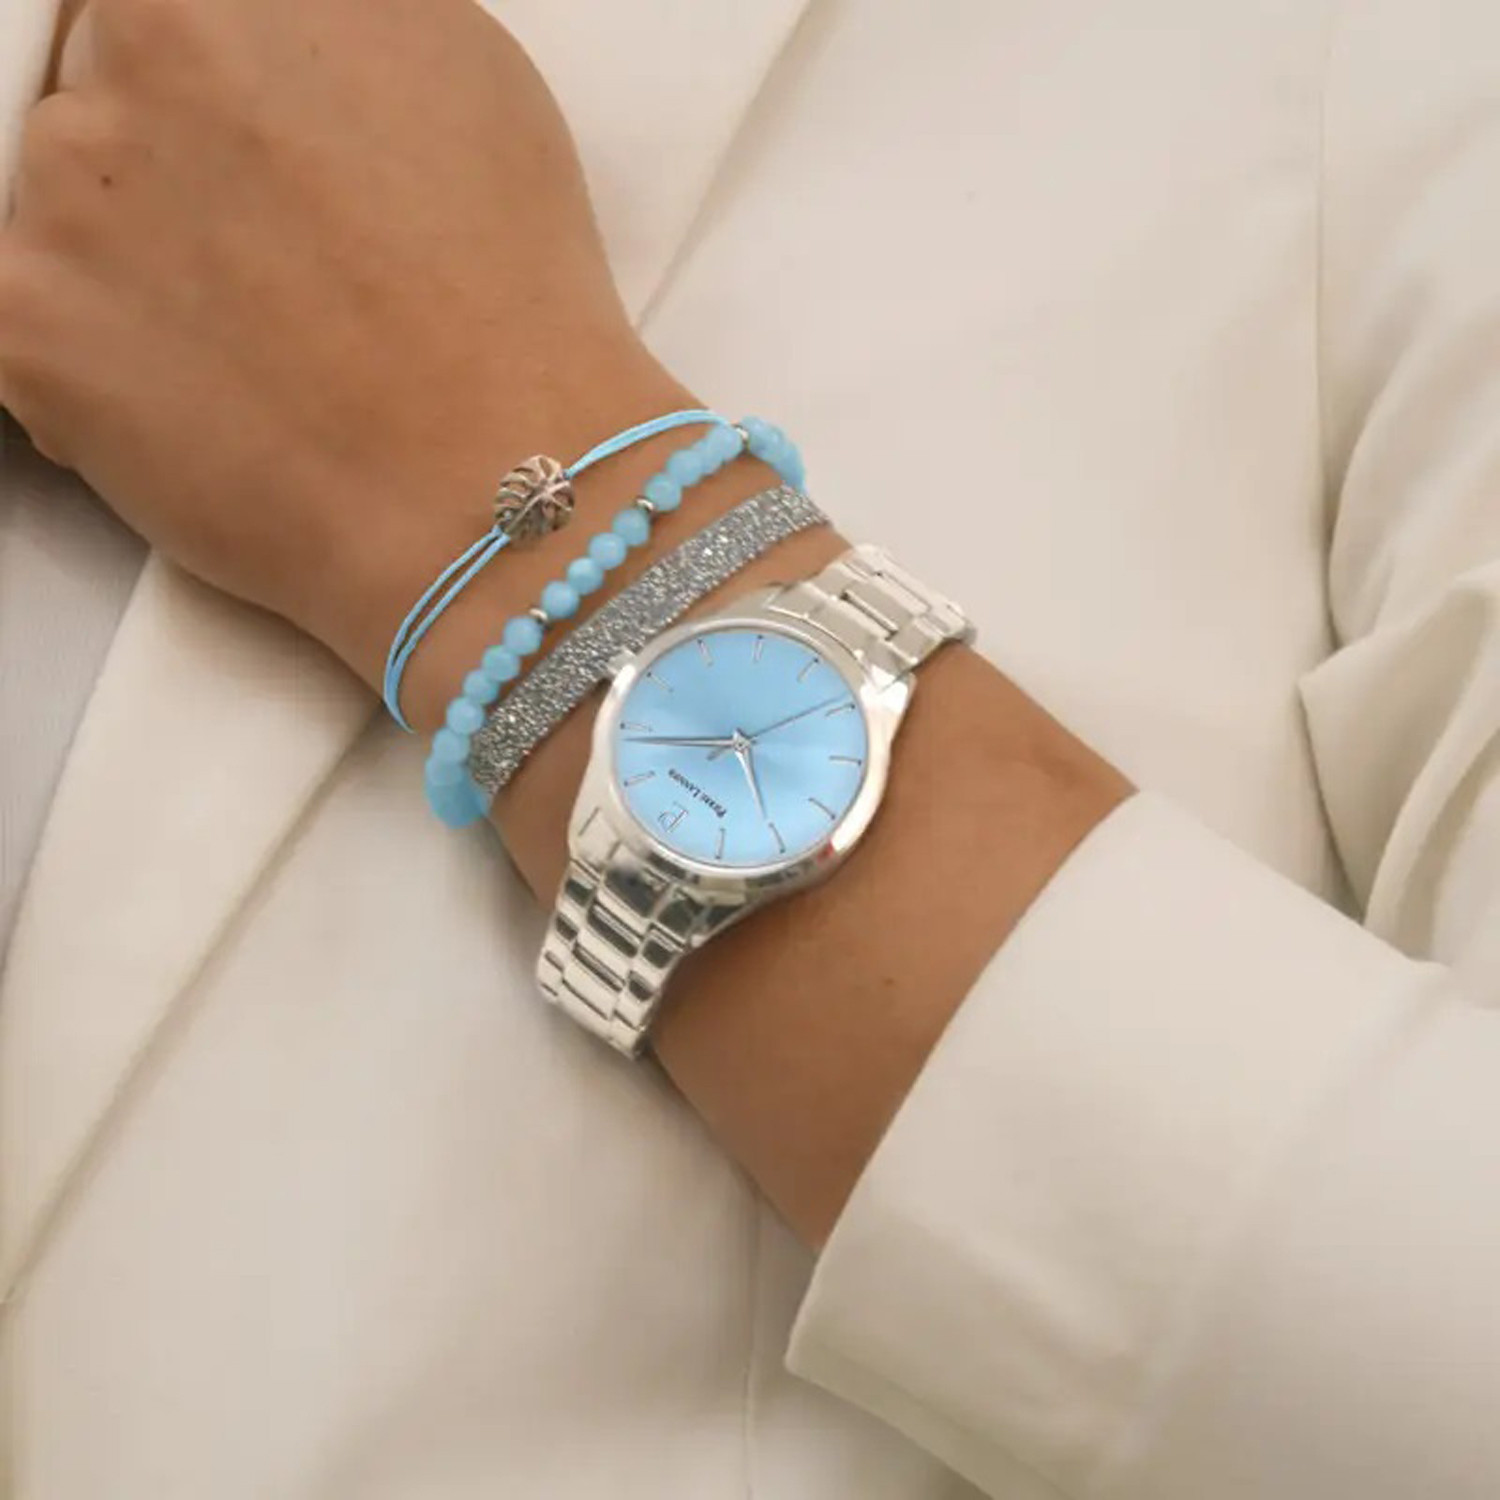 Coffret femme ROXANE Cadran bleu bracelet acier
Pierre Lannier x Les Interchangeables Edition limitée